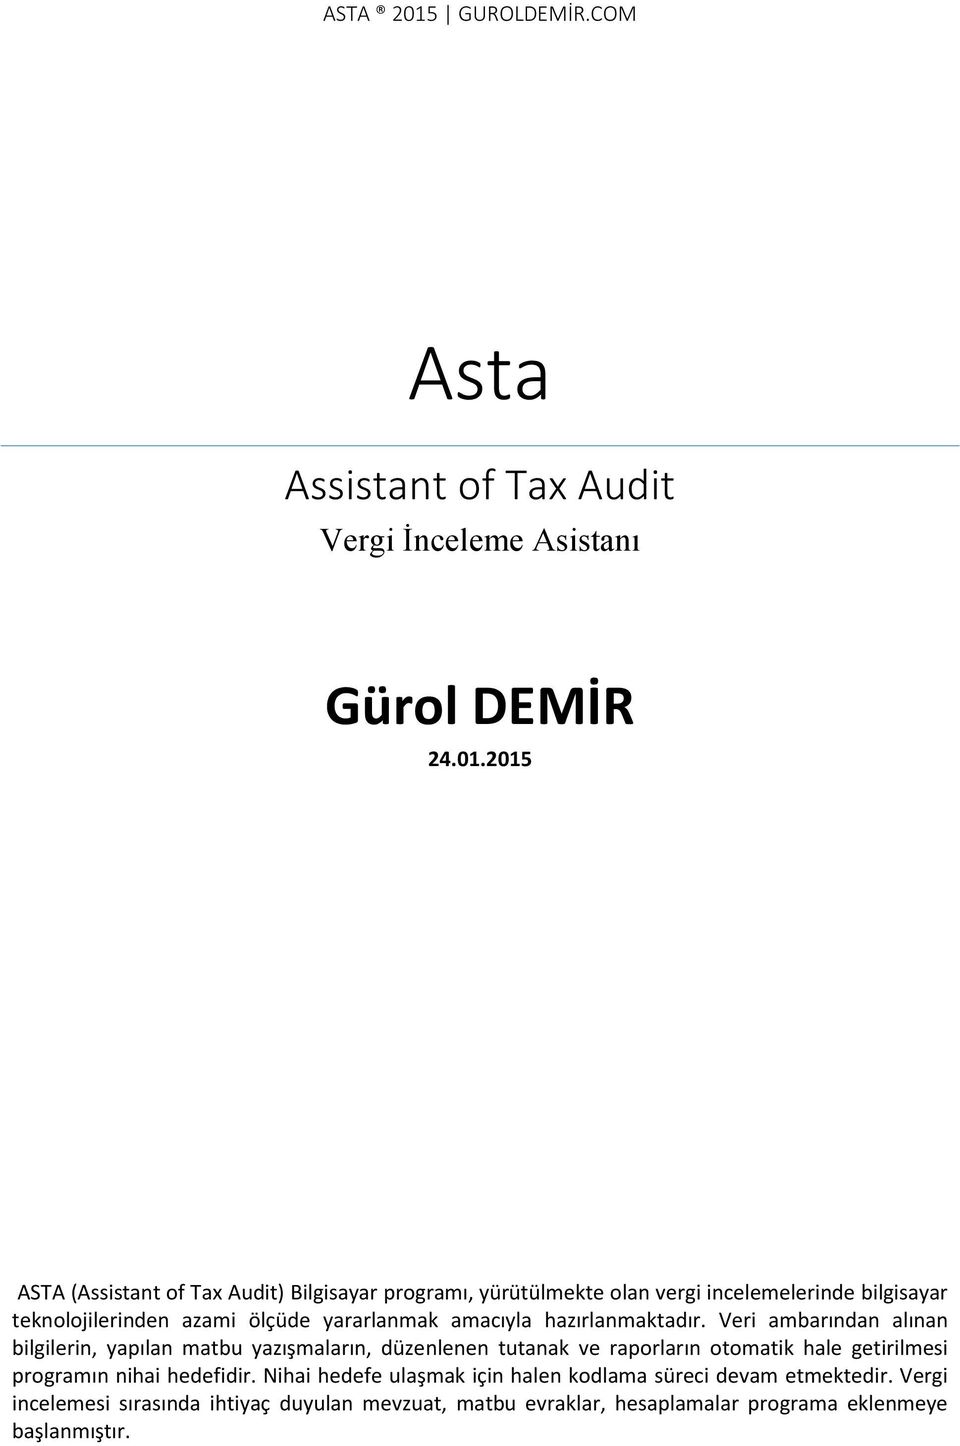 2015 ASTA (Assistant of Tax Audit) Bilgisayar programı, yürütülmekte olan vergi incelemelerinde bilgisayar teknolojilerinden azami ölçüde yararlanmak